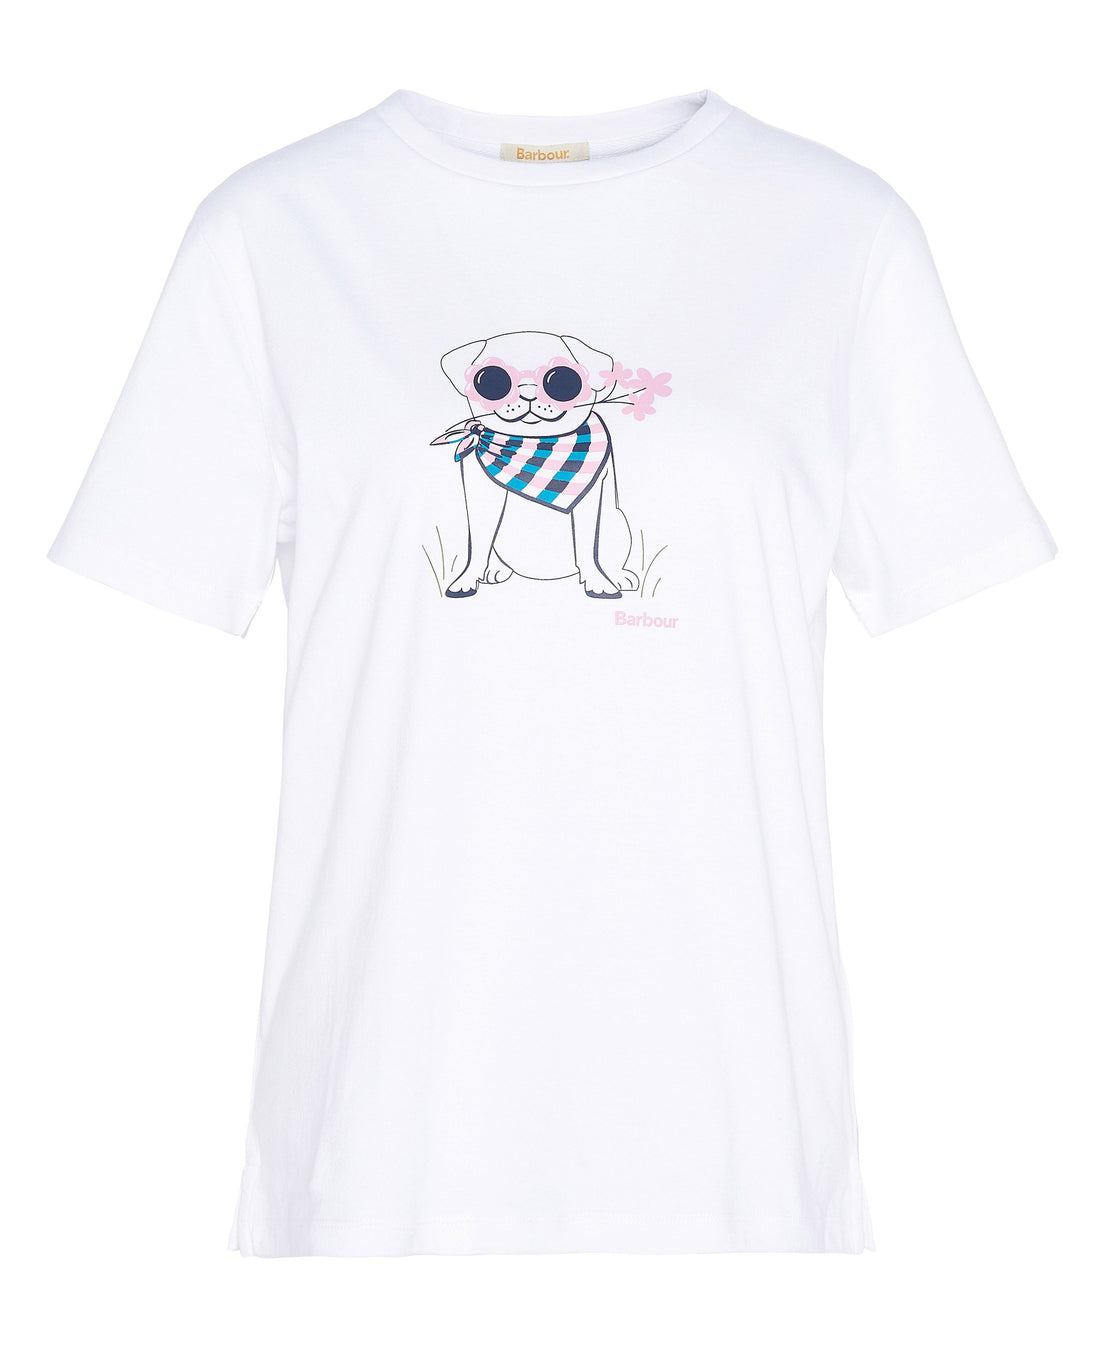 Honeywell T-Shirt - White